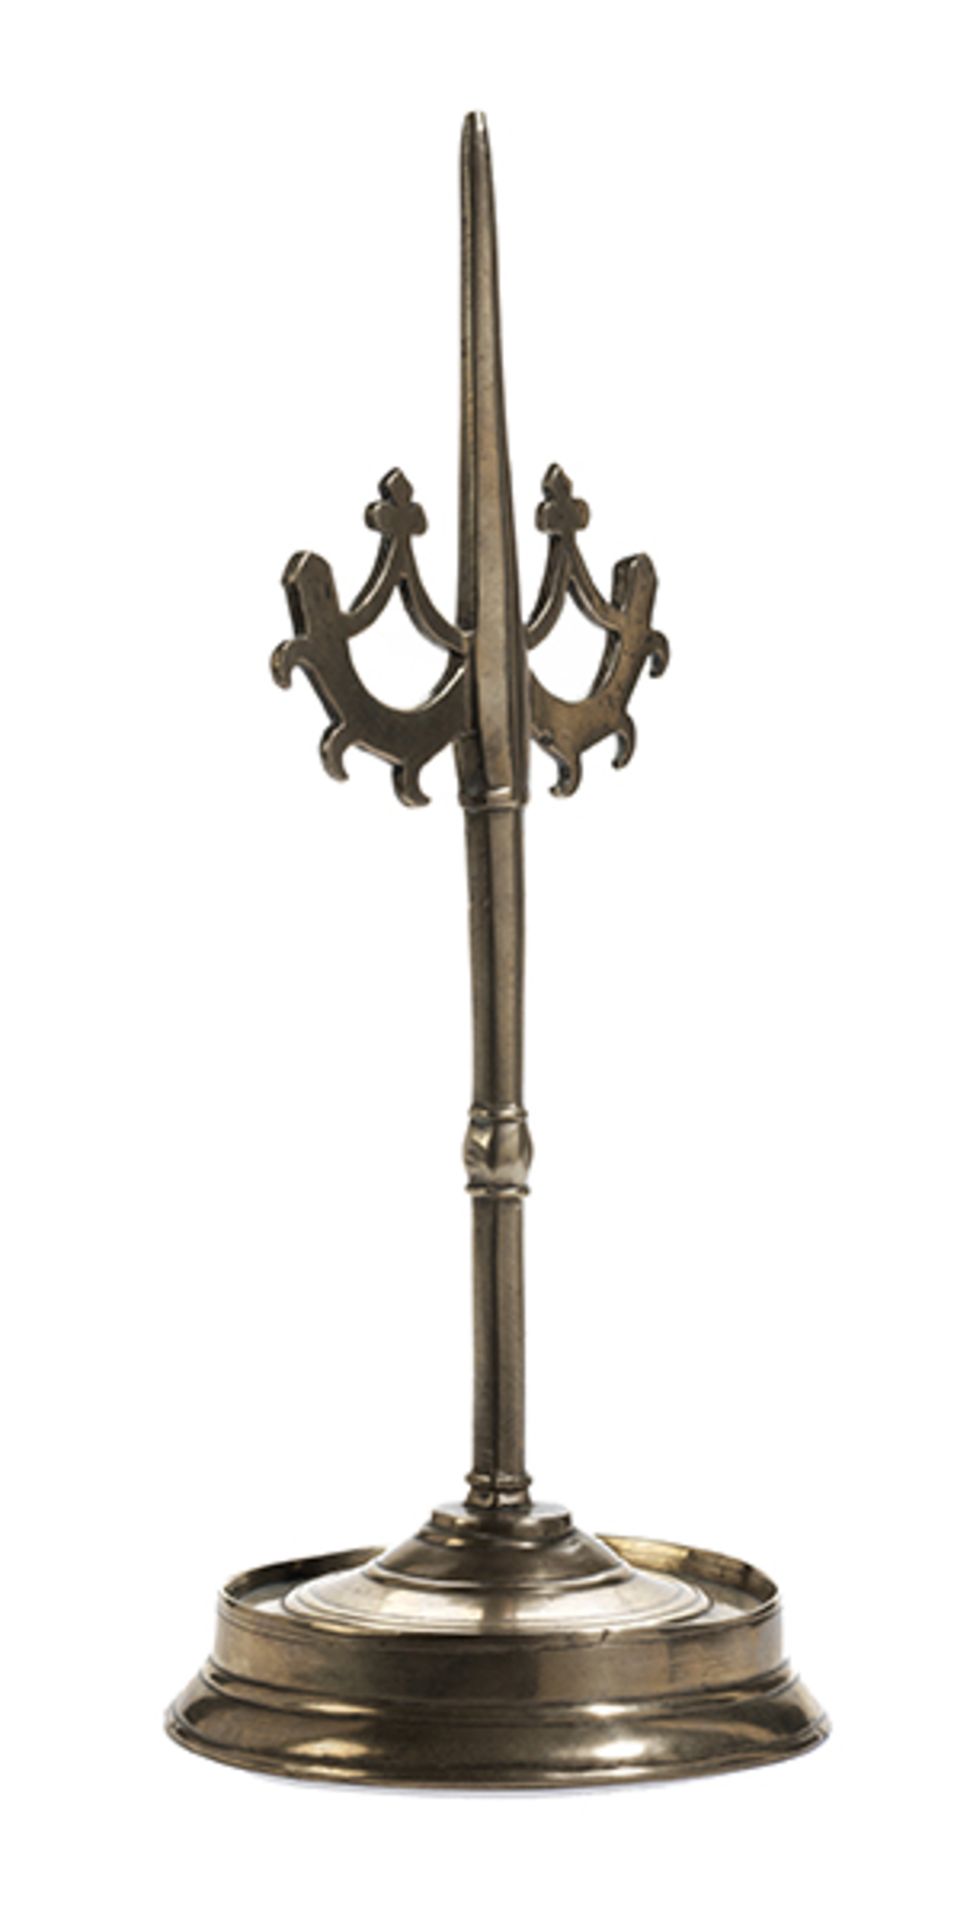 Flämischer LeuchterHöhe: 29 cm. Bodenseitige Inventarnummer "9917". Flandern, 15. Jahrhundert. In - Bild 2 aus 4